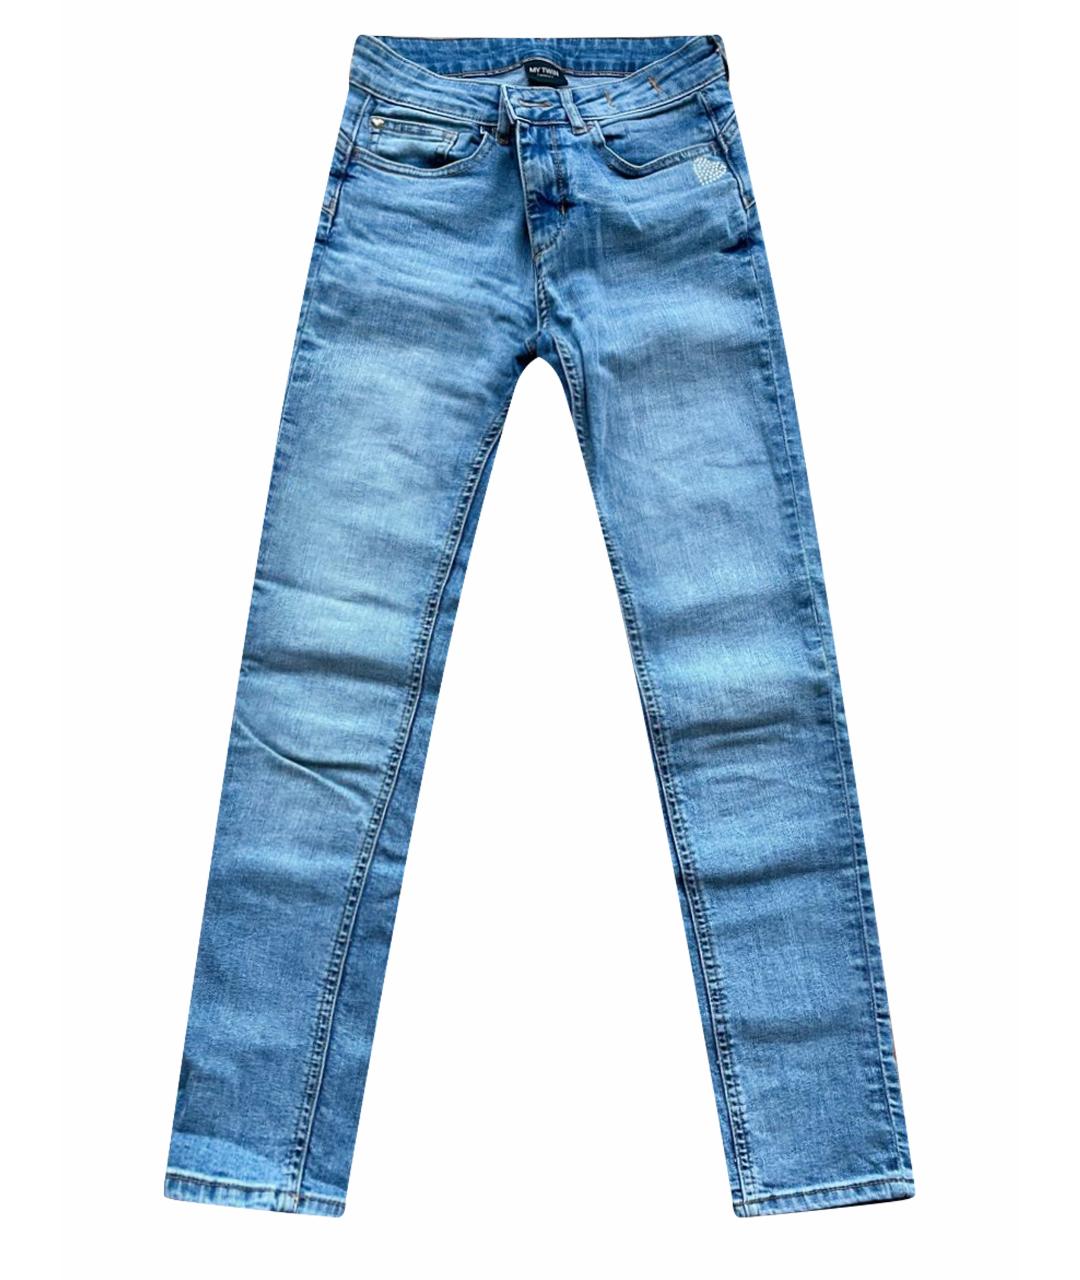 TWIN-SET Голубые хлопковые джинсы слим, фото 1